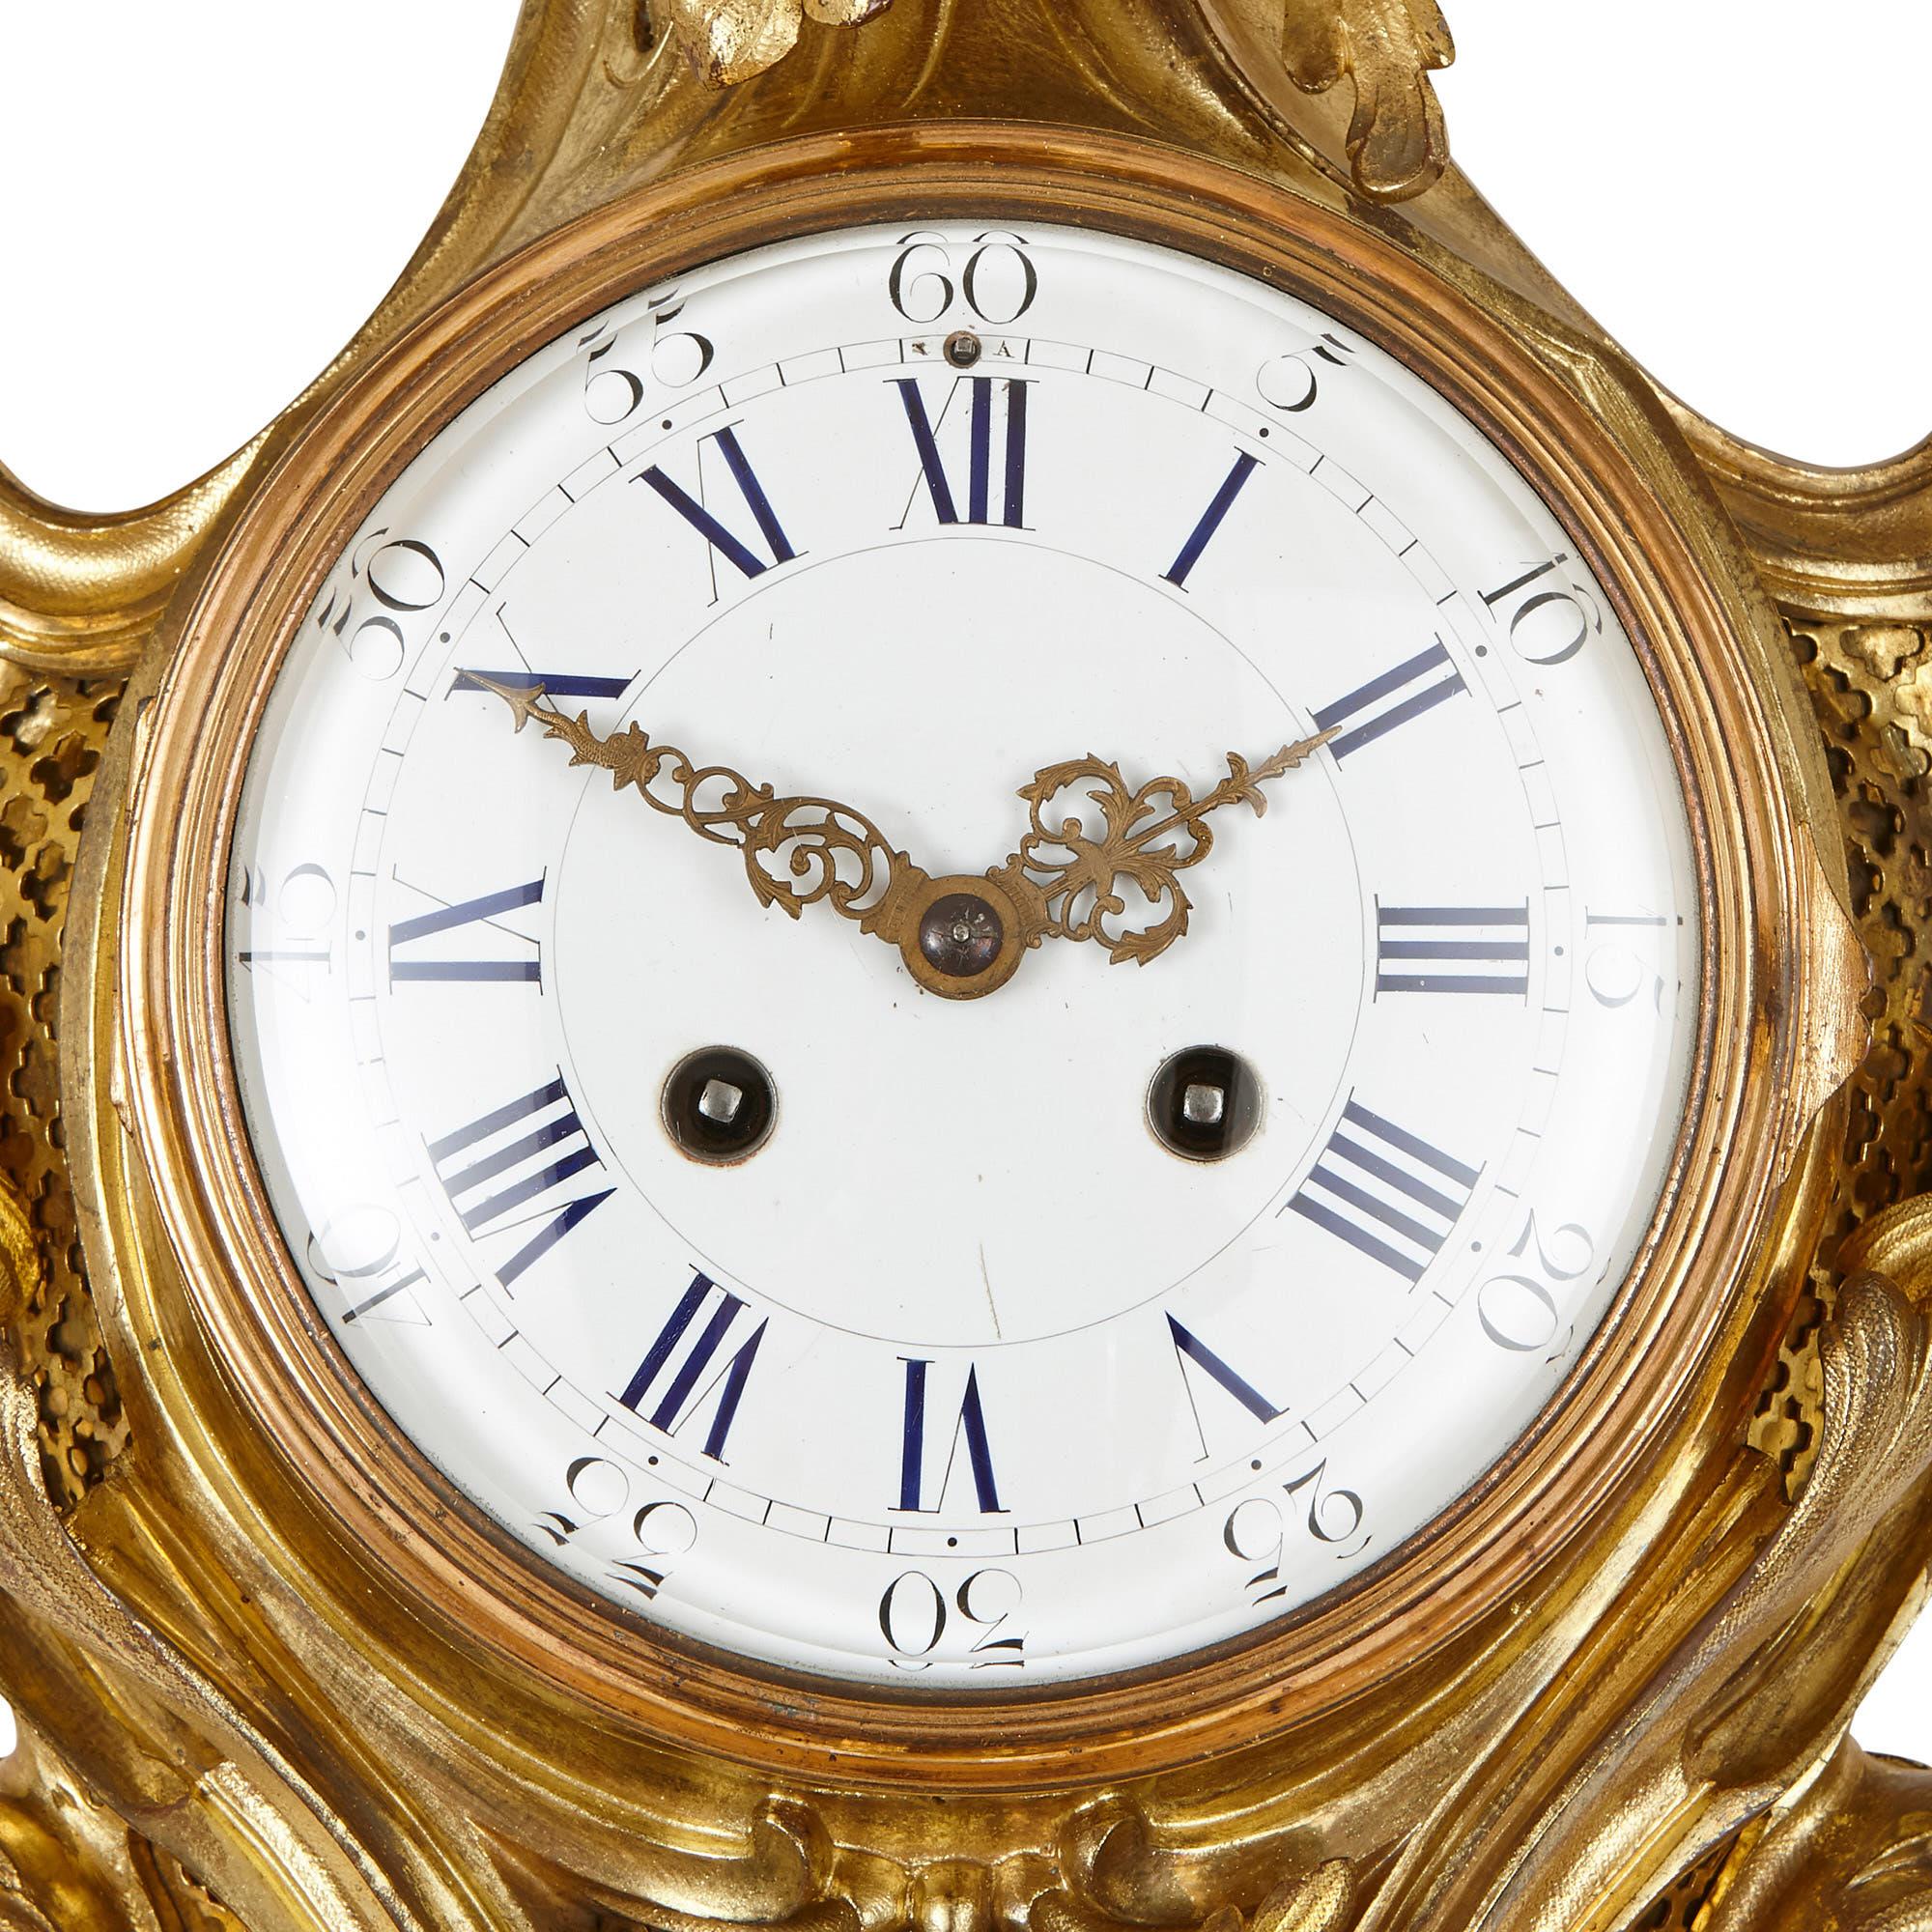 Diese im französischen Rokoko-Stil entworfene Uhr und dieses Barometer sind mit einer schönen Verzierung aus vergoldeter Bronze mit Blattwerk versehen. Beide sind rautenförmig und haben einen symmetrischen Körper, der aus einem spitzen Ober- und